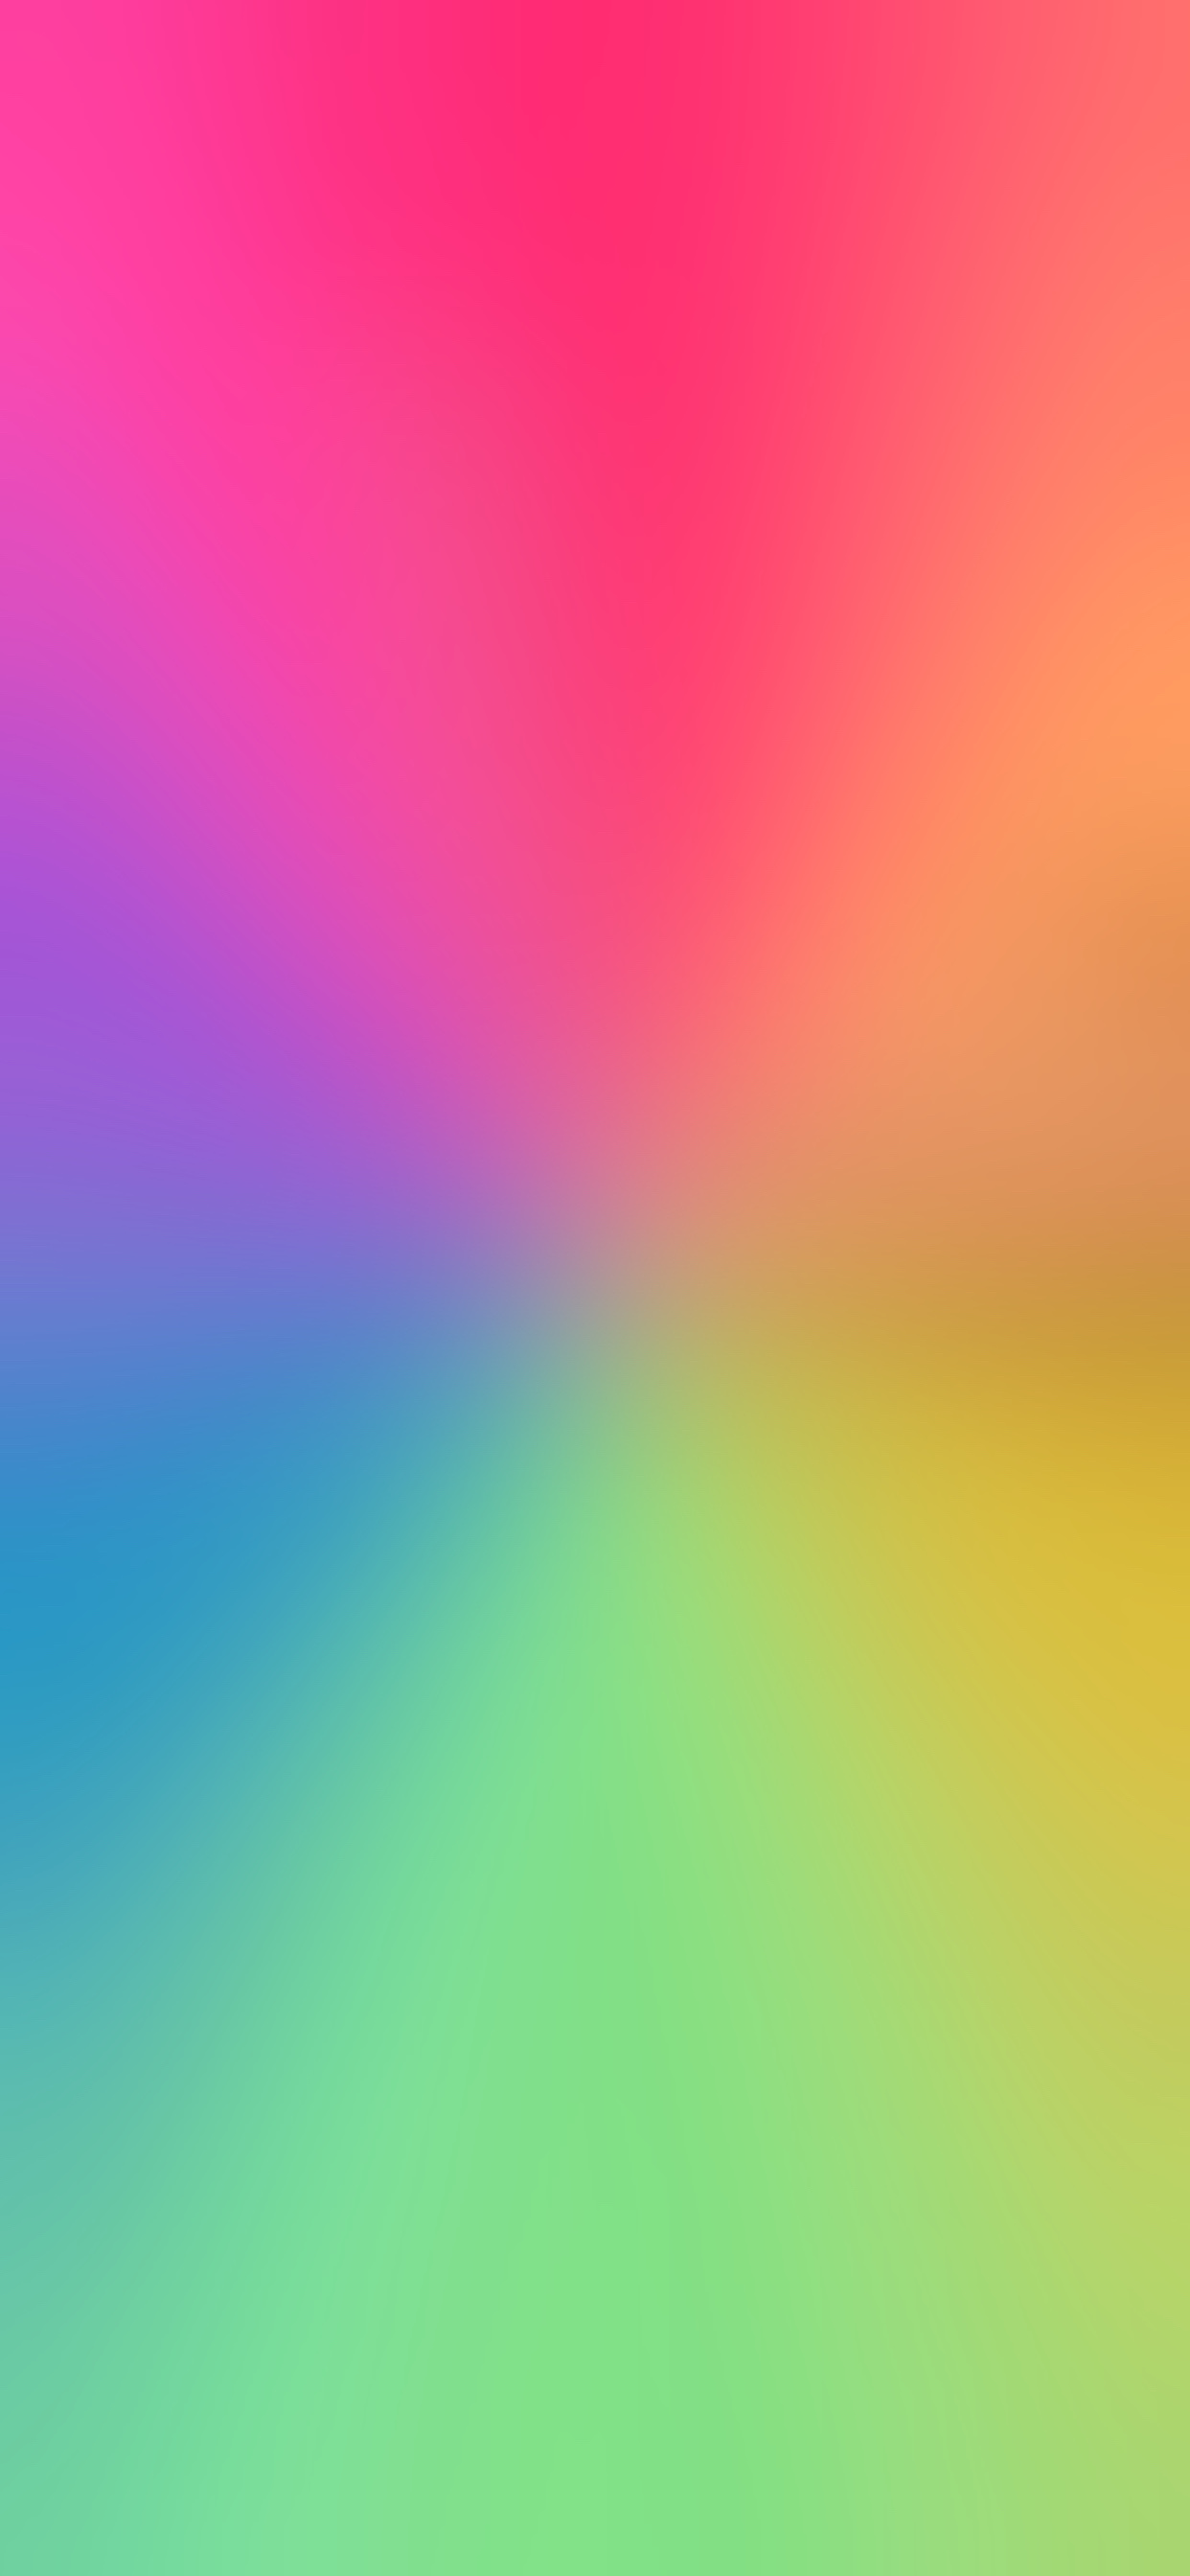 Pride Seamless Pattern Lgbt Gay Lesbian Vector có sẵn miễn phí bản quyền  1358972732  Shutterstock